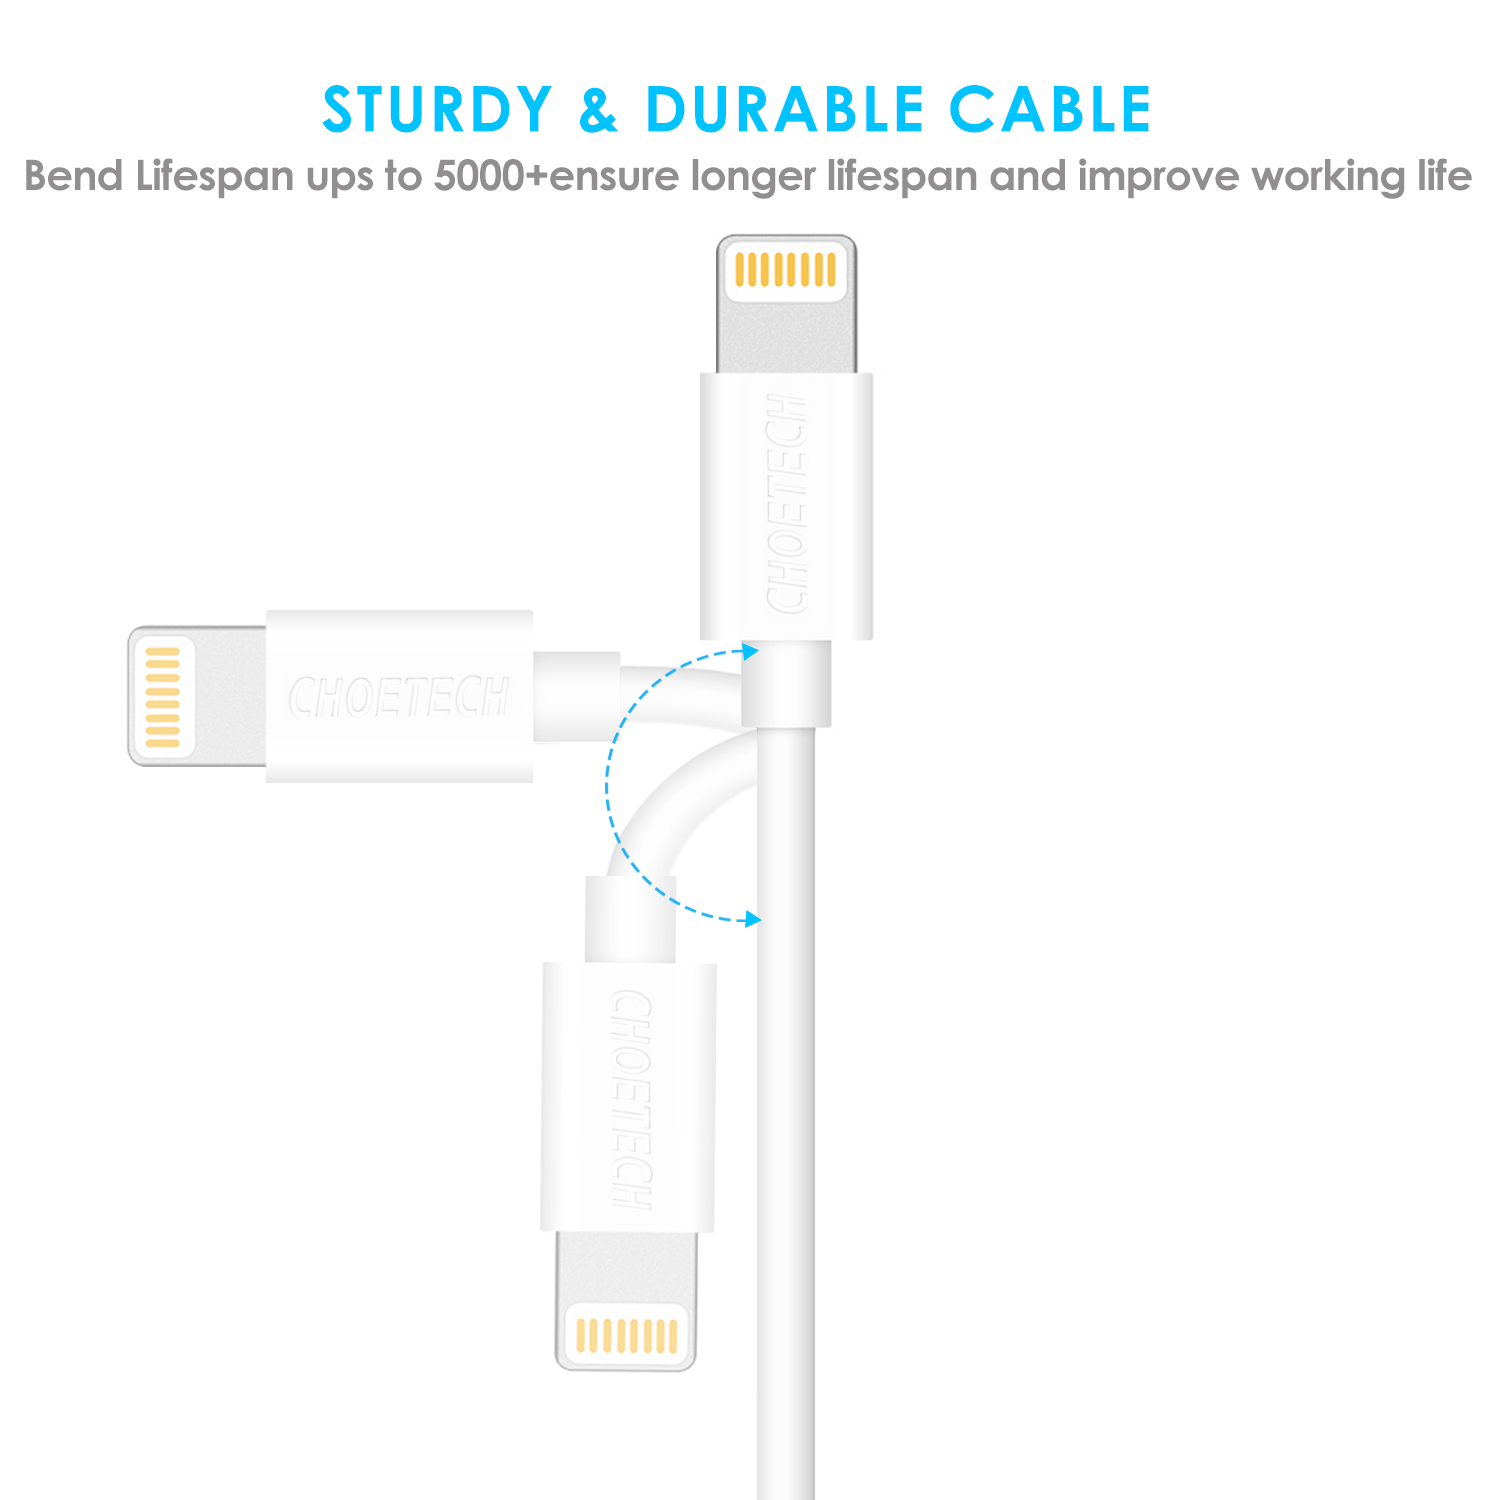 สายชาร์จ Choetech รุ่น USB to Lightning Cable 1.8m MFI Certified Nickel-plated Connectors (IP0027) - สีขาว